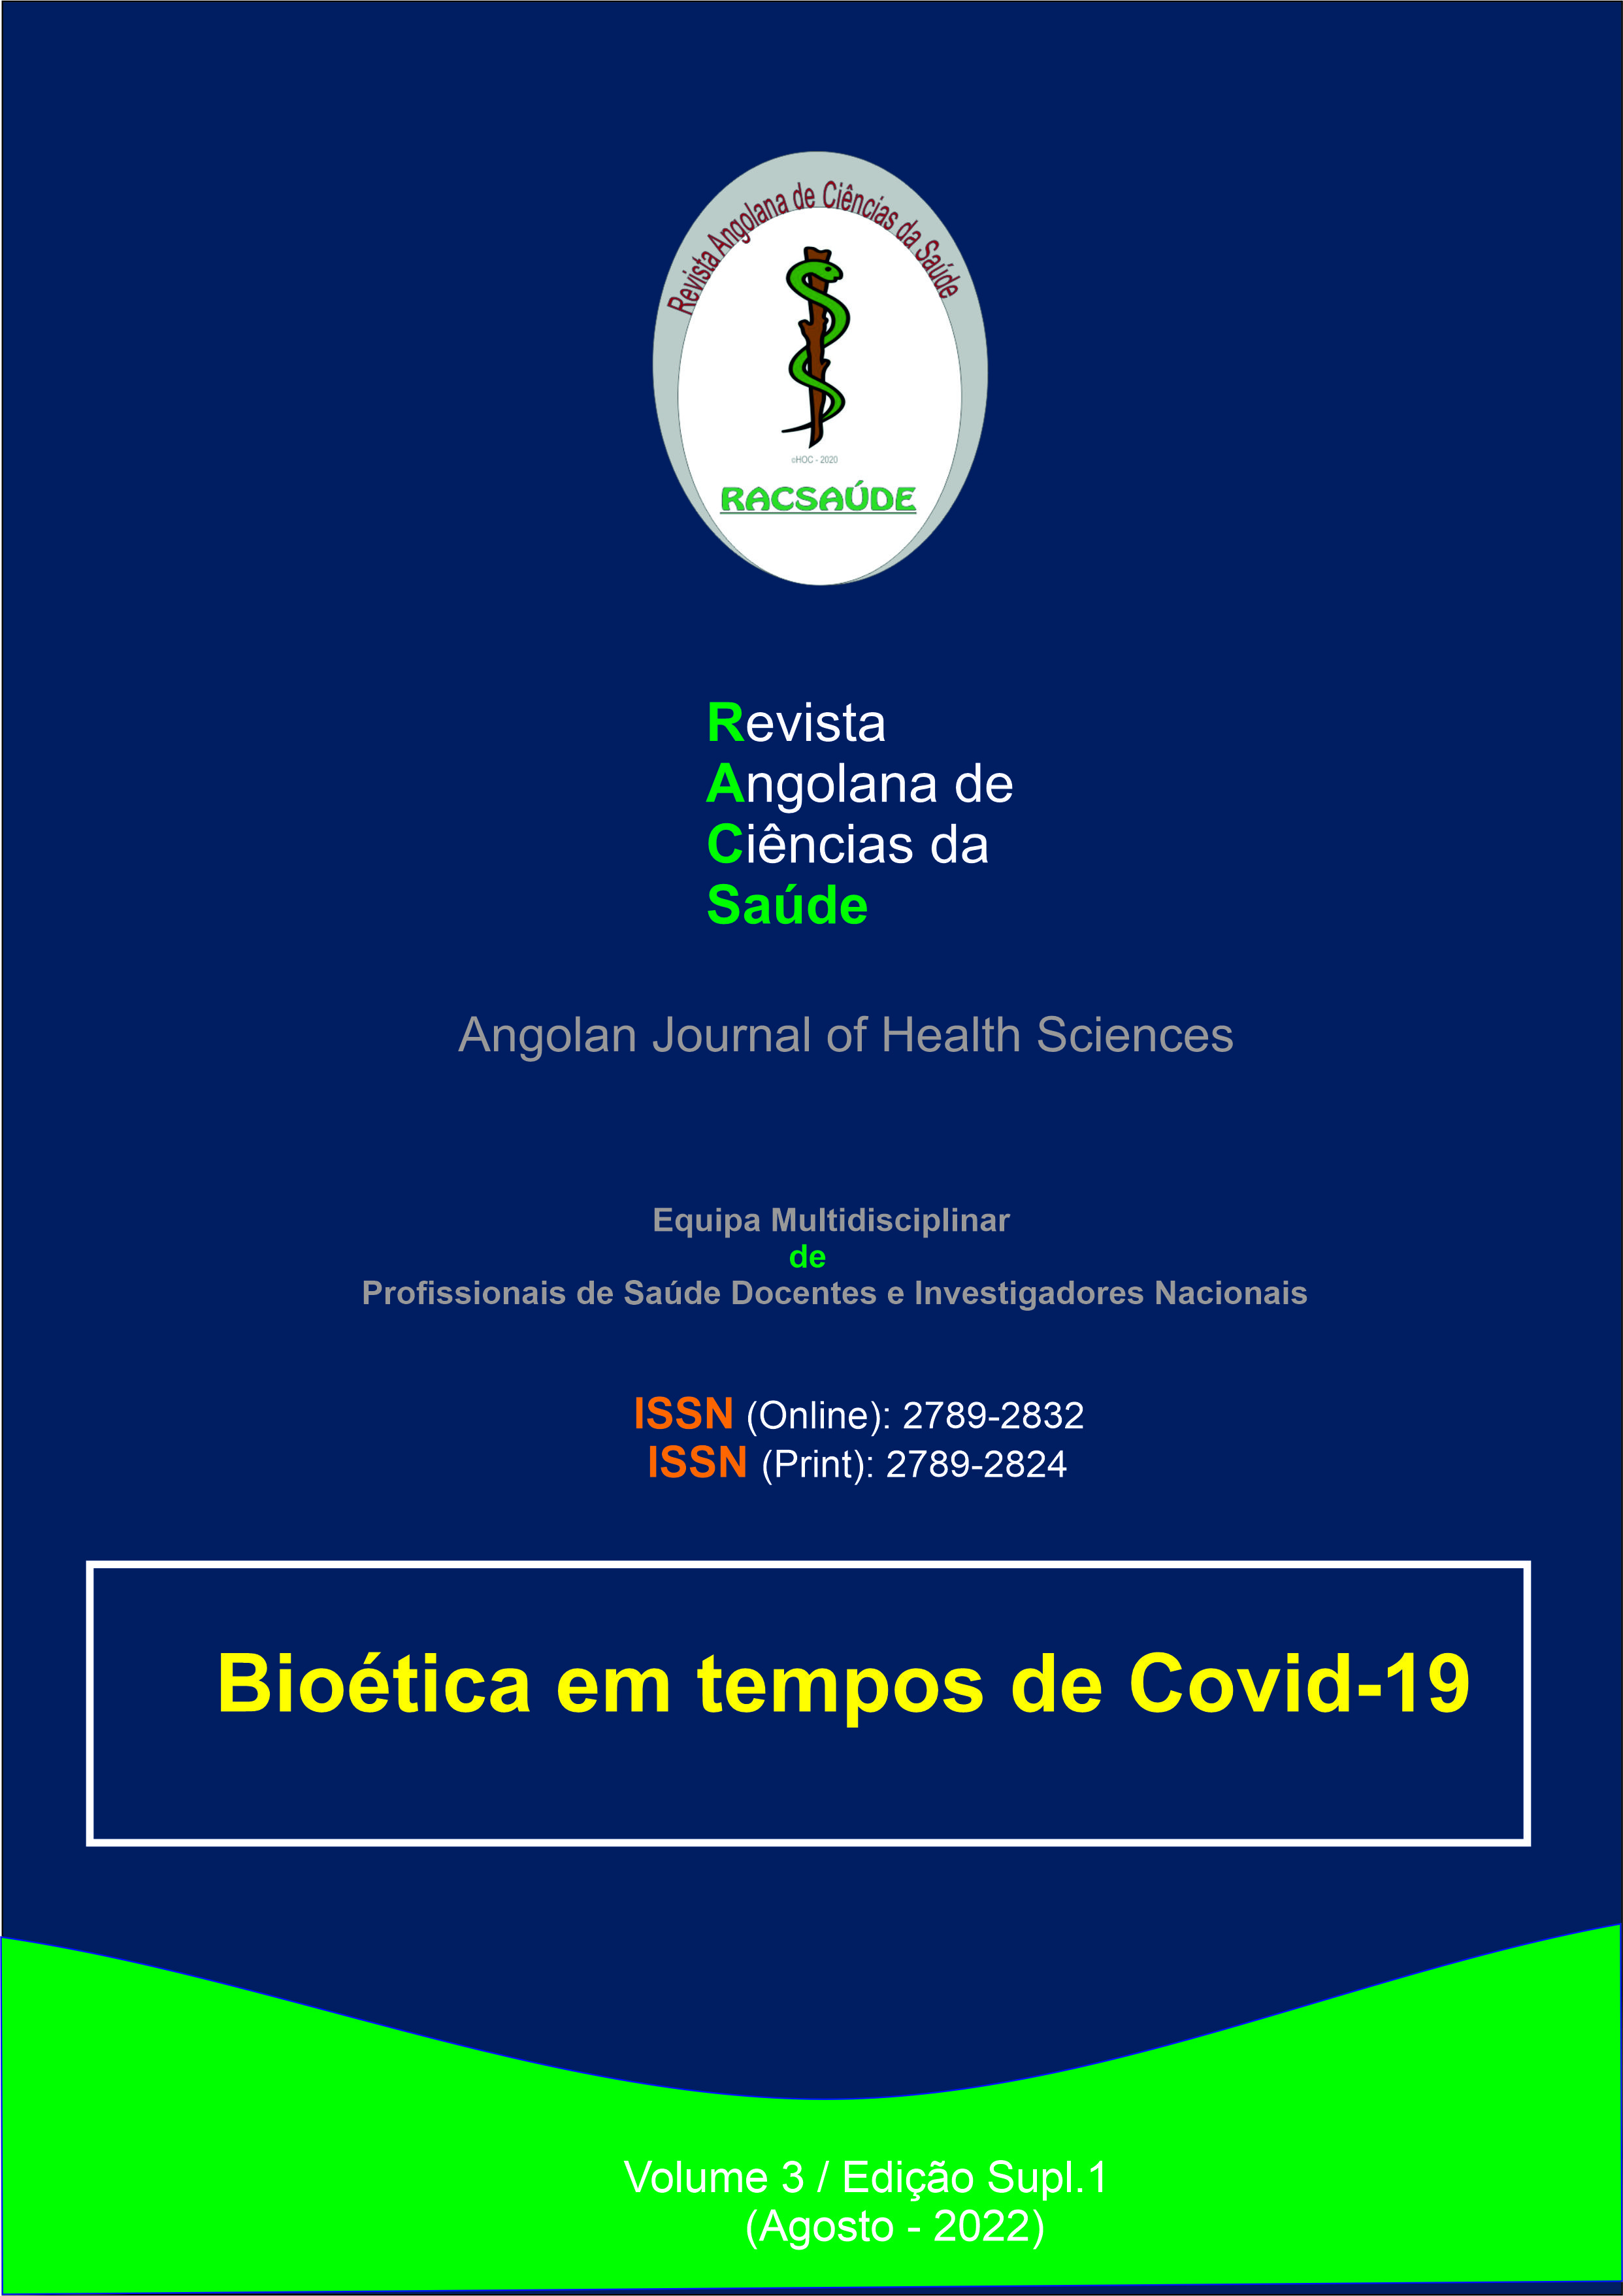 					Ver Vol. 3 N.º Edição Supl. 1 (2022): Bioética em tempos de Covid-19
				